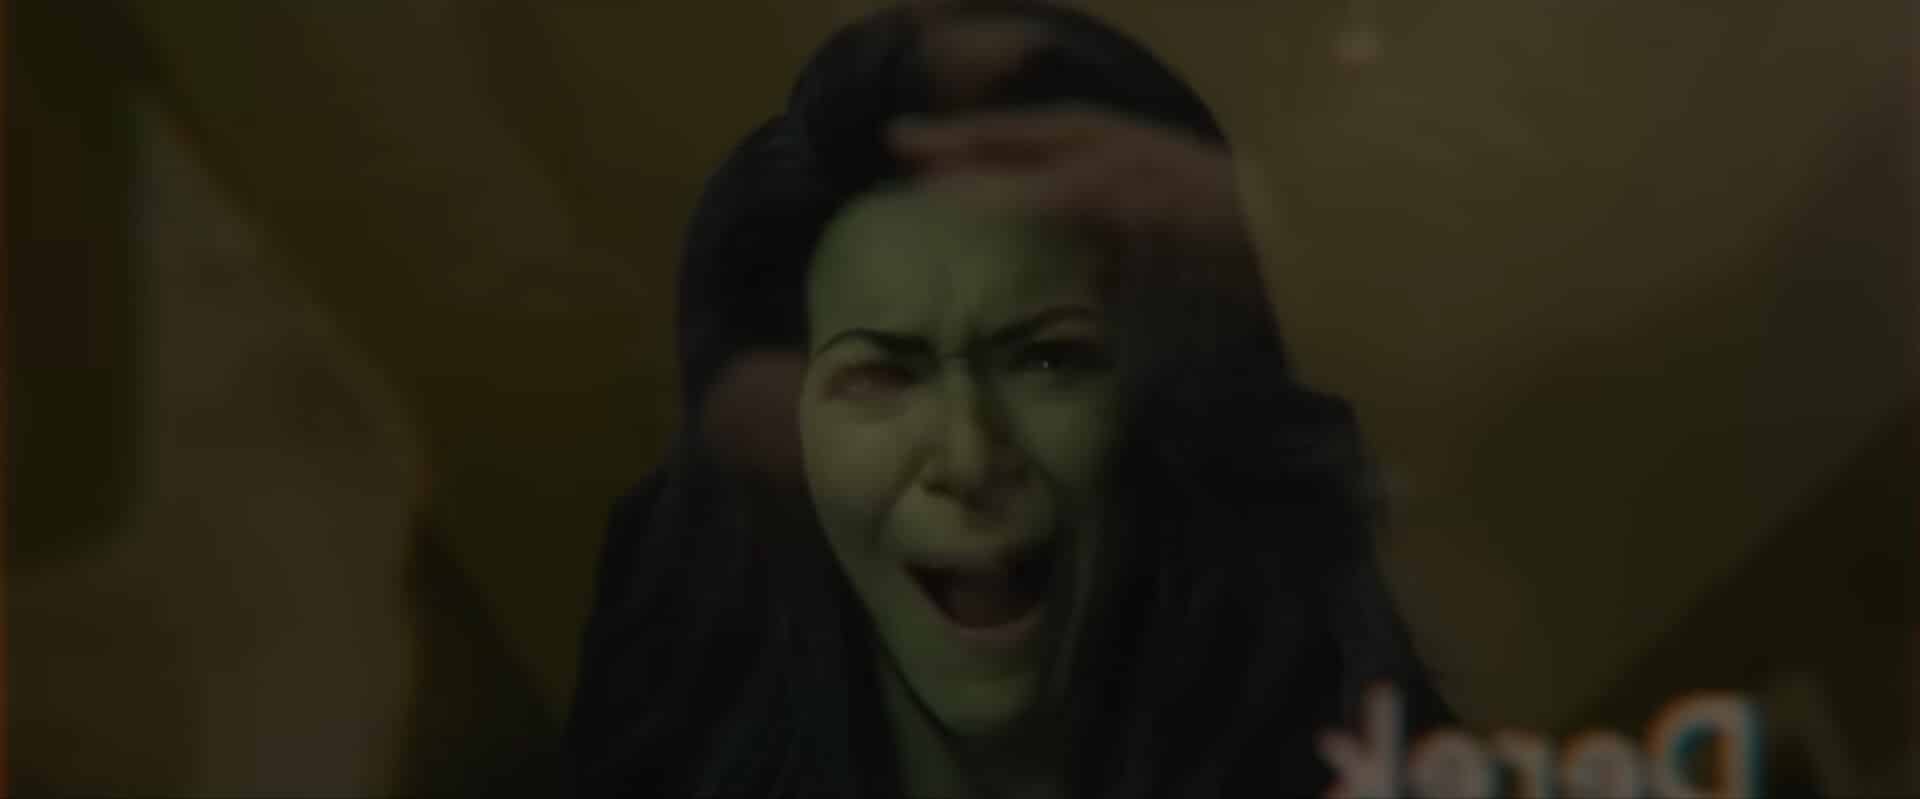 Les problèmes de qualité de CGI Jennifer Walters dans la bande-annonce de She-Hulk indiquent des problèmes de traitement des dispositifs visuels et des effets visuels du MCU Marvel Cinematic Universe